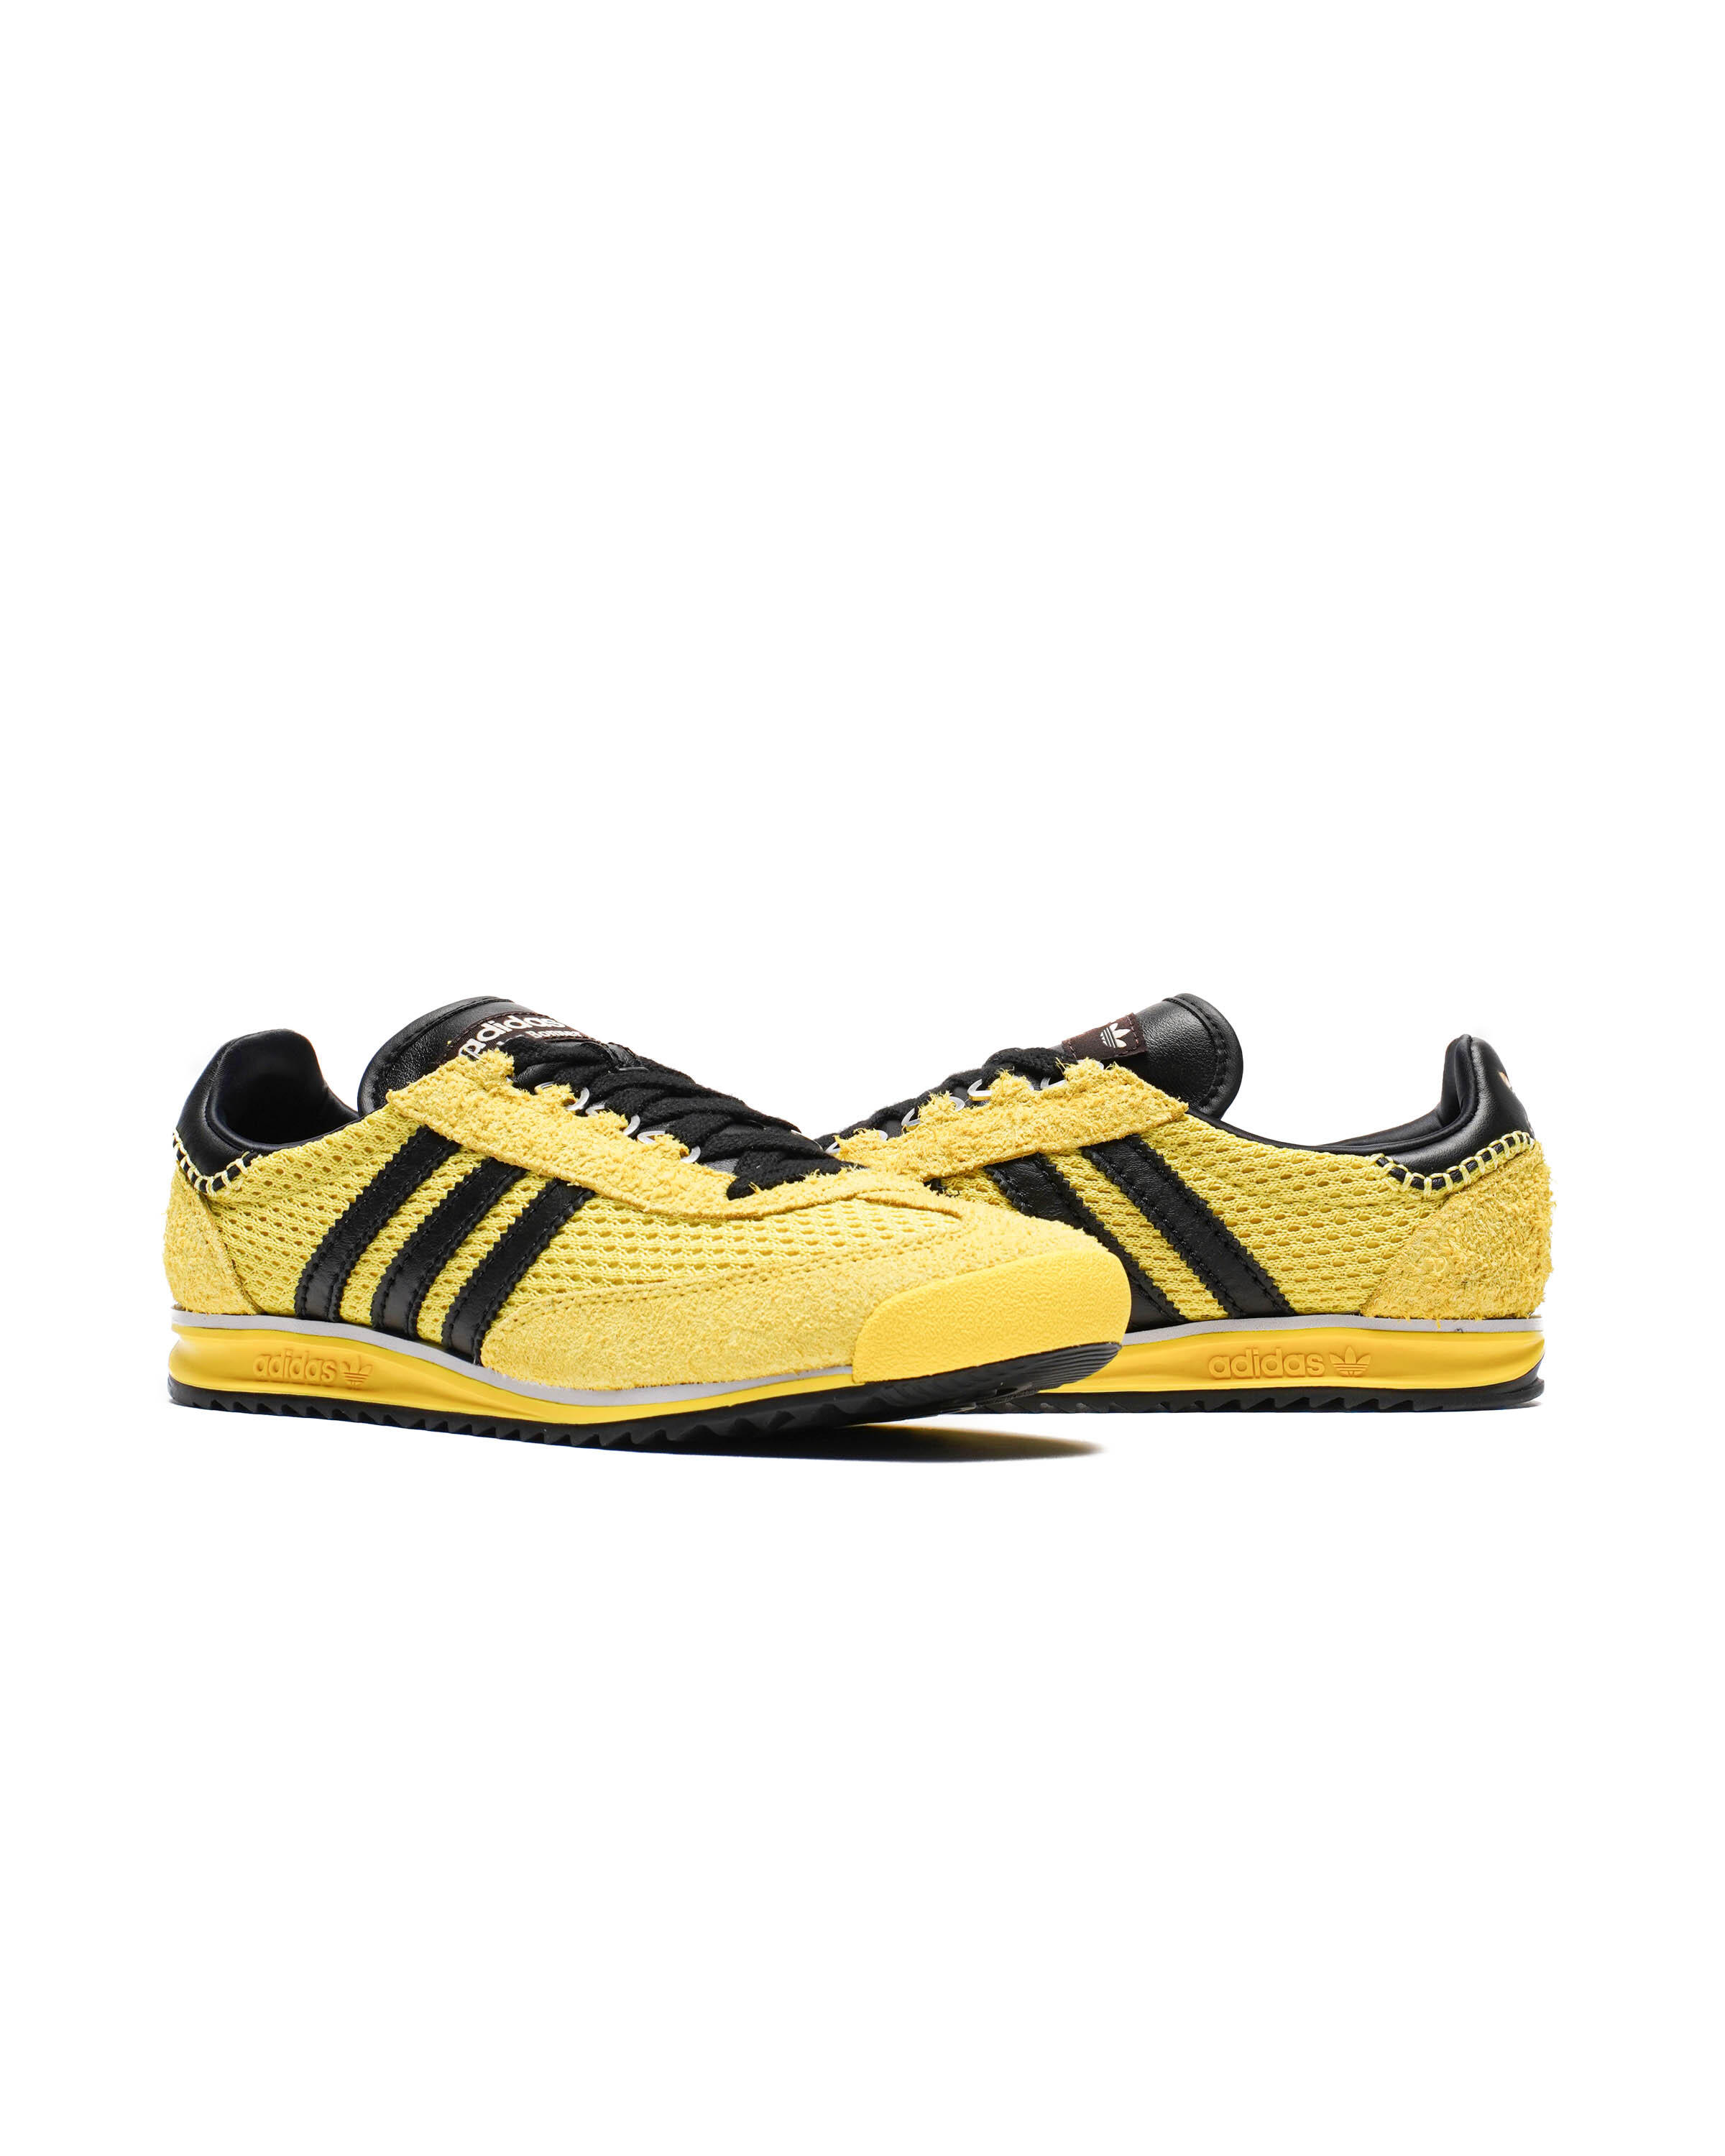 Adidas Originals x Wales Bonner SL76